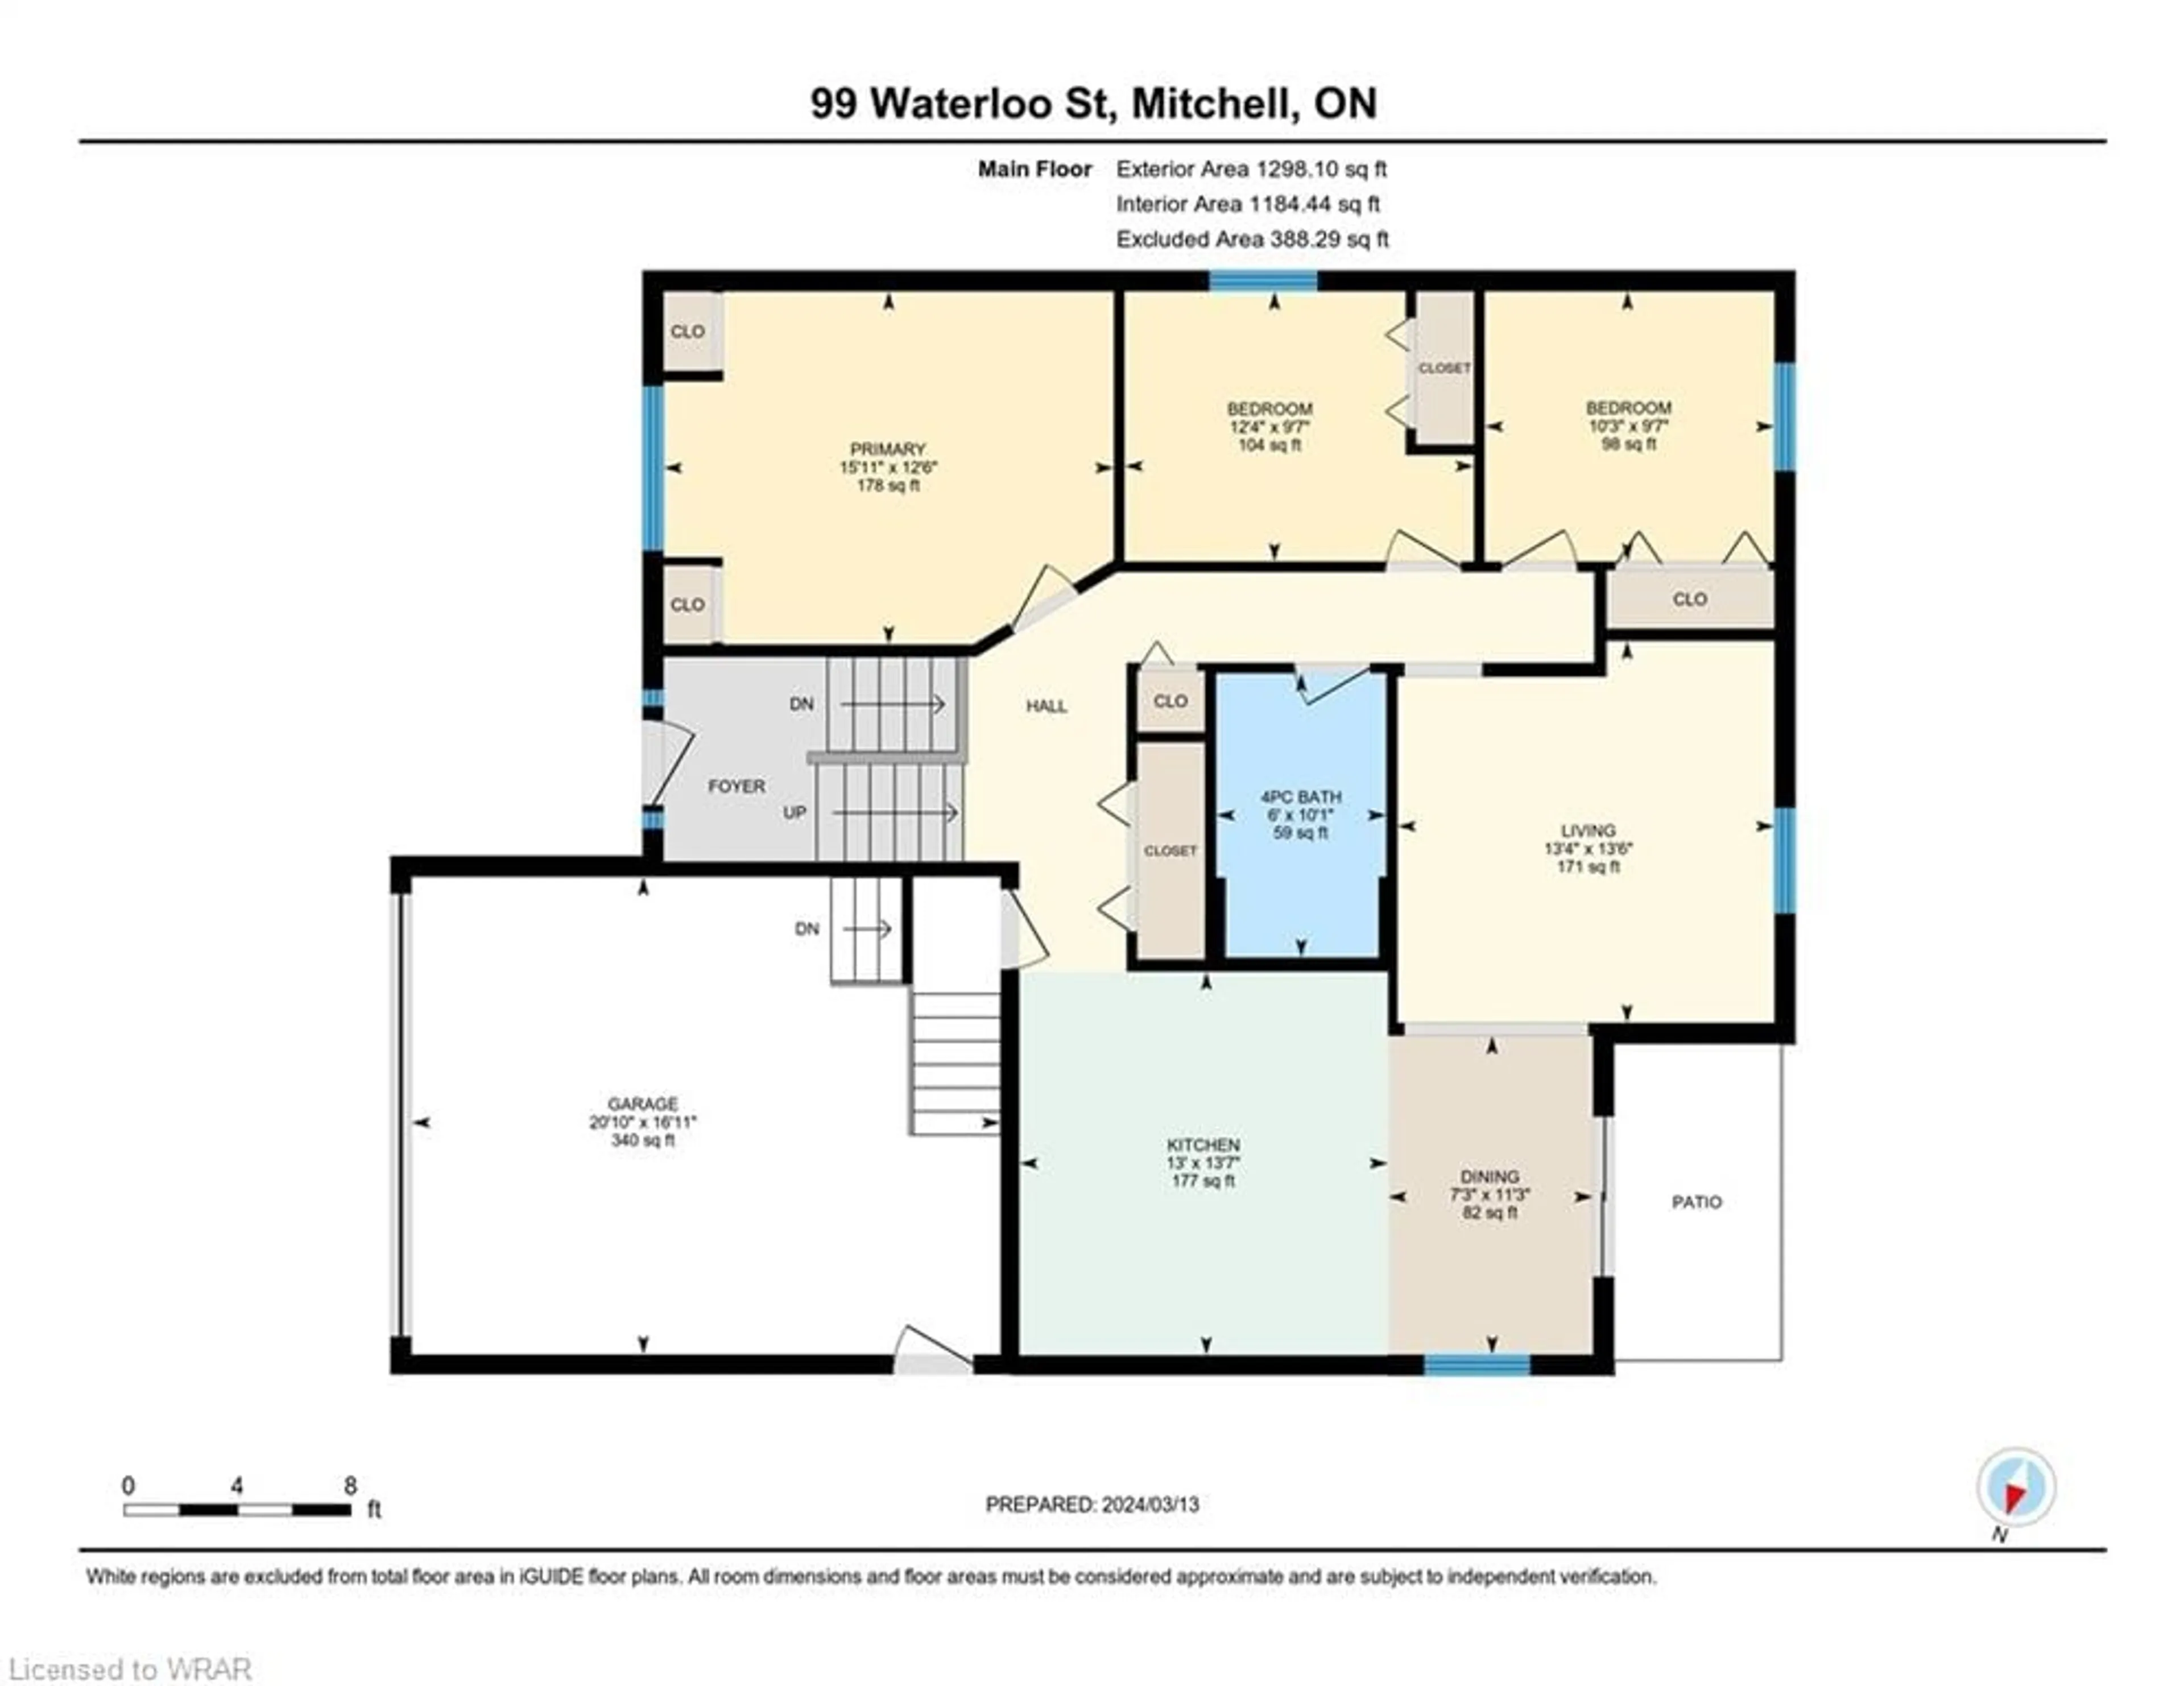 Floor plan for 99 Waterloo St, Mitchell Ontario N0K 1N0